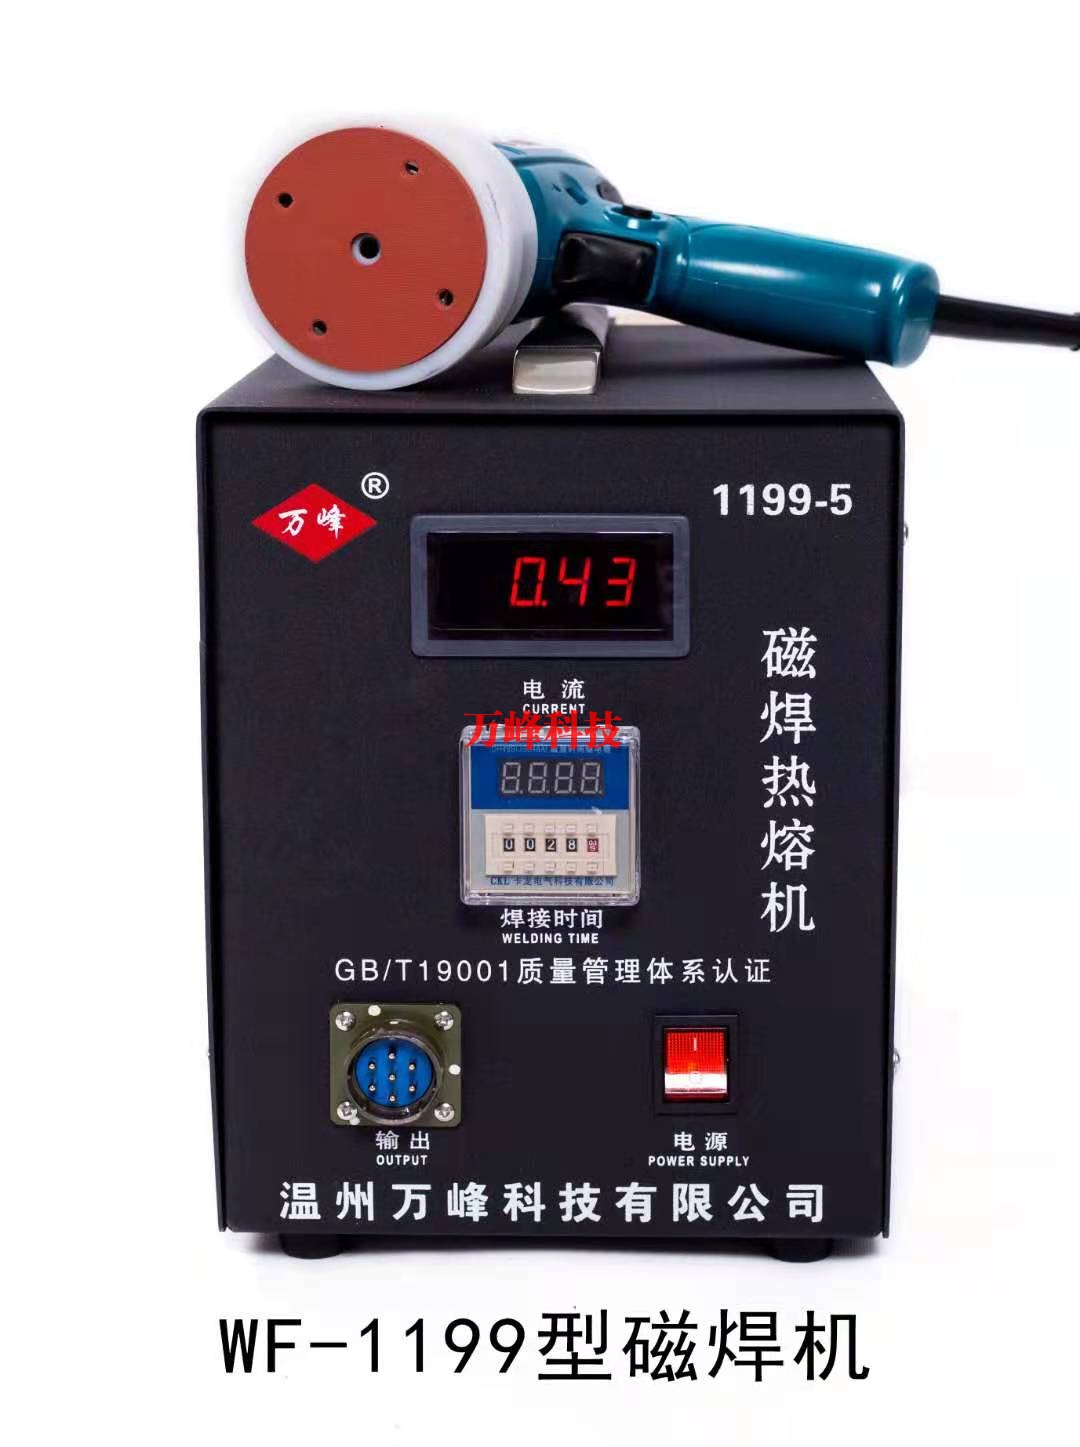 昆山WF-1199型磁焊热熔机